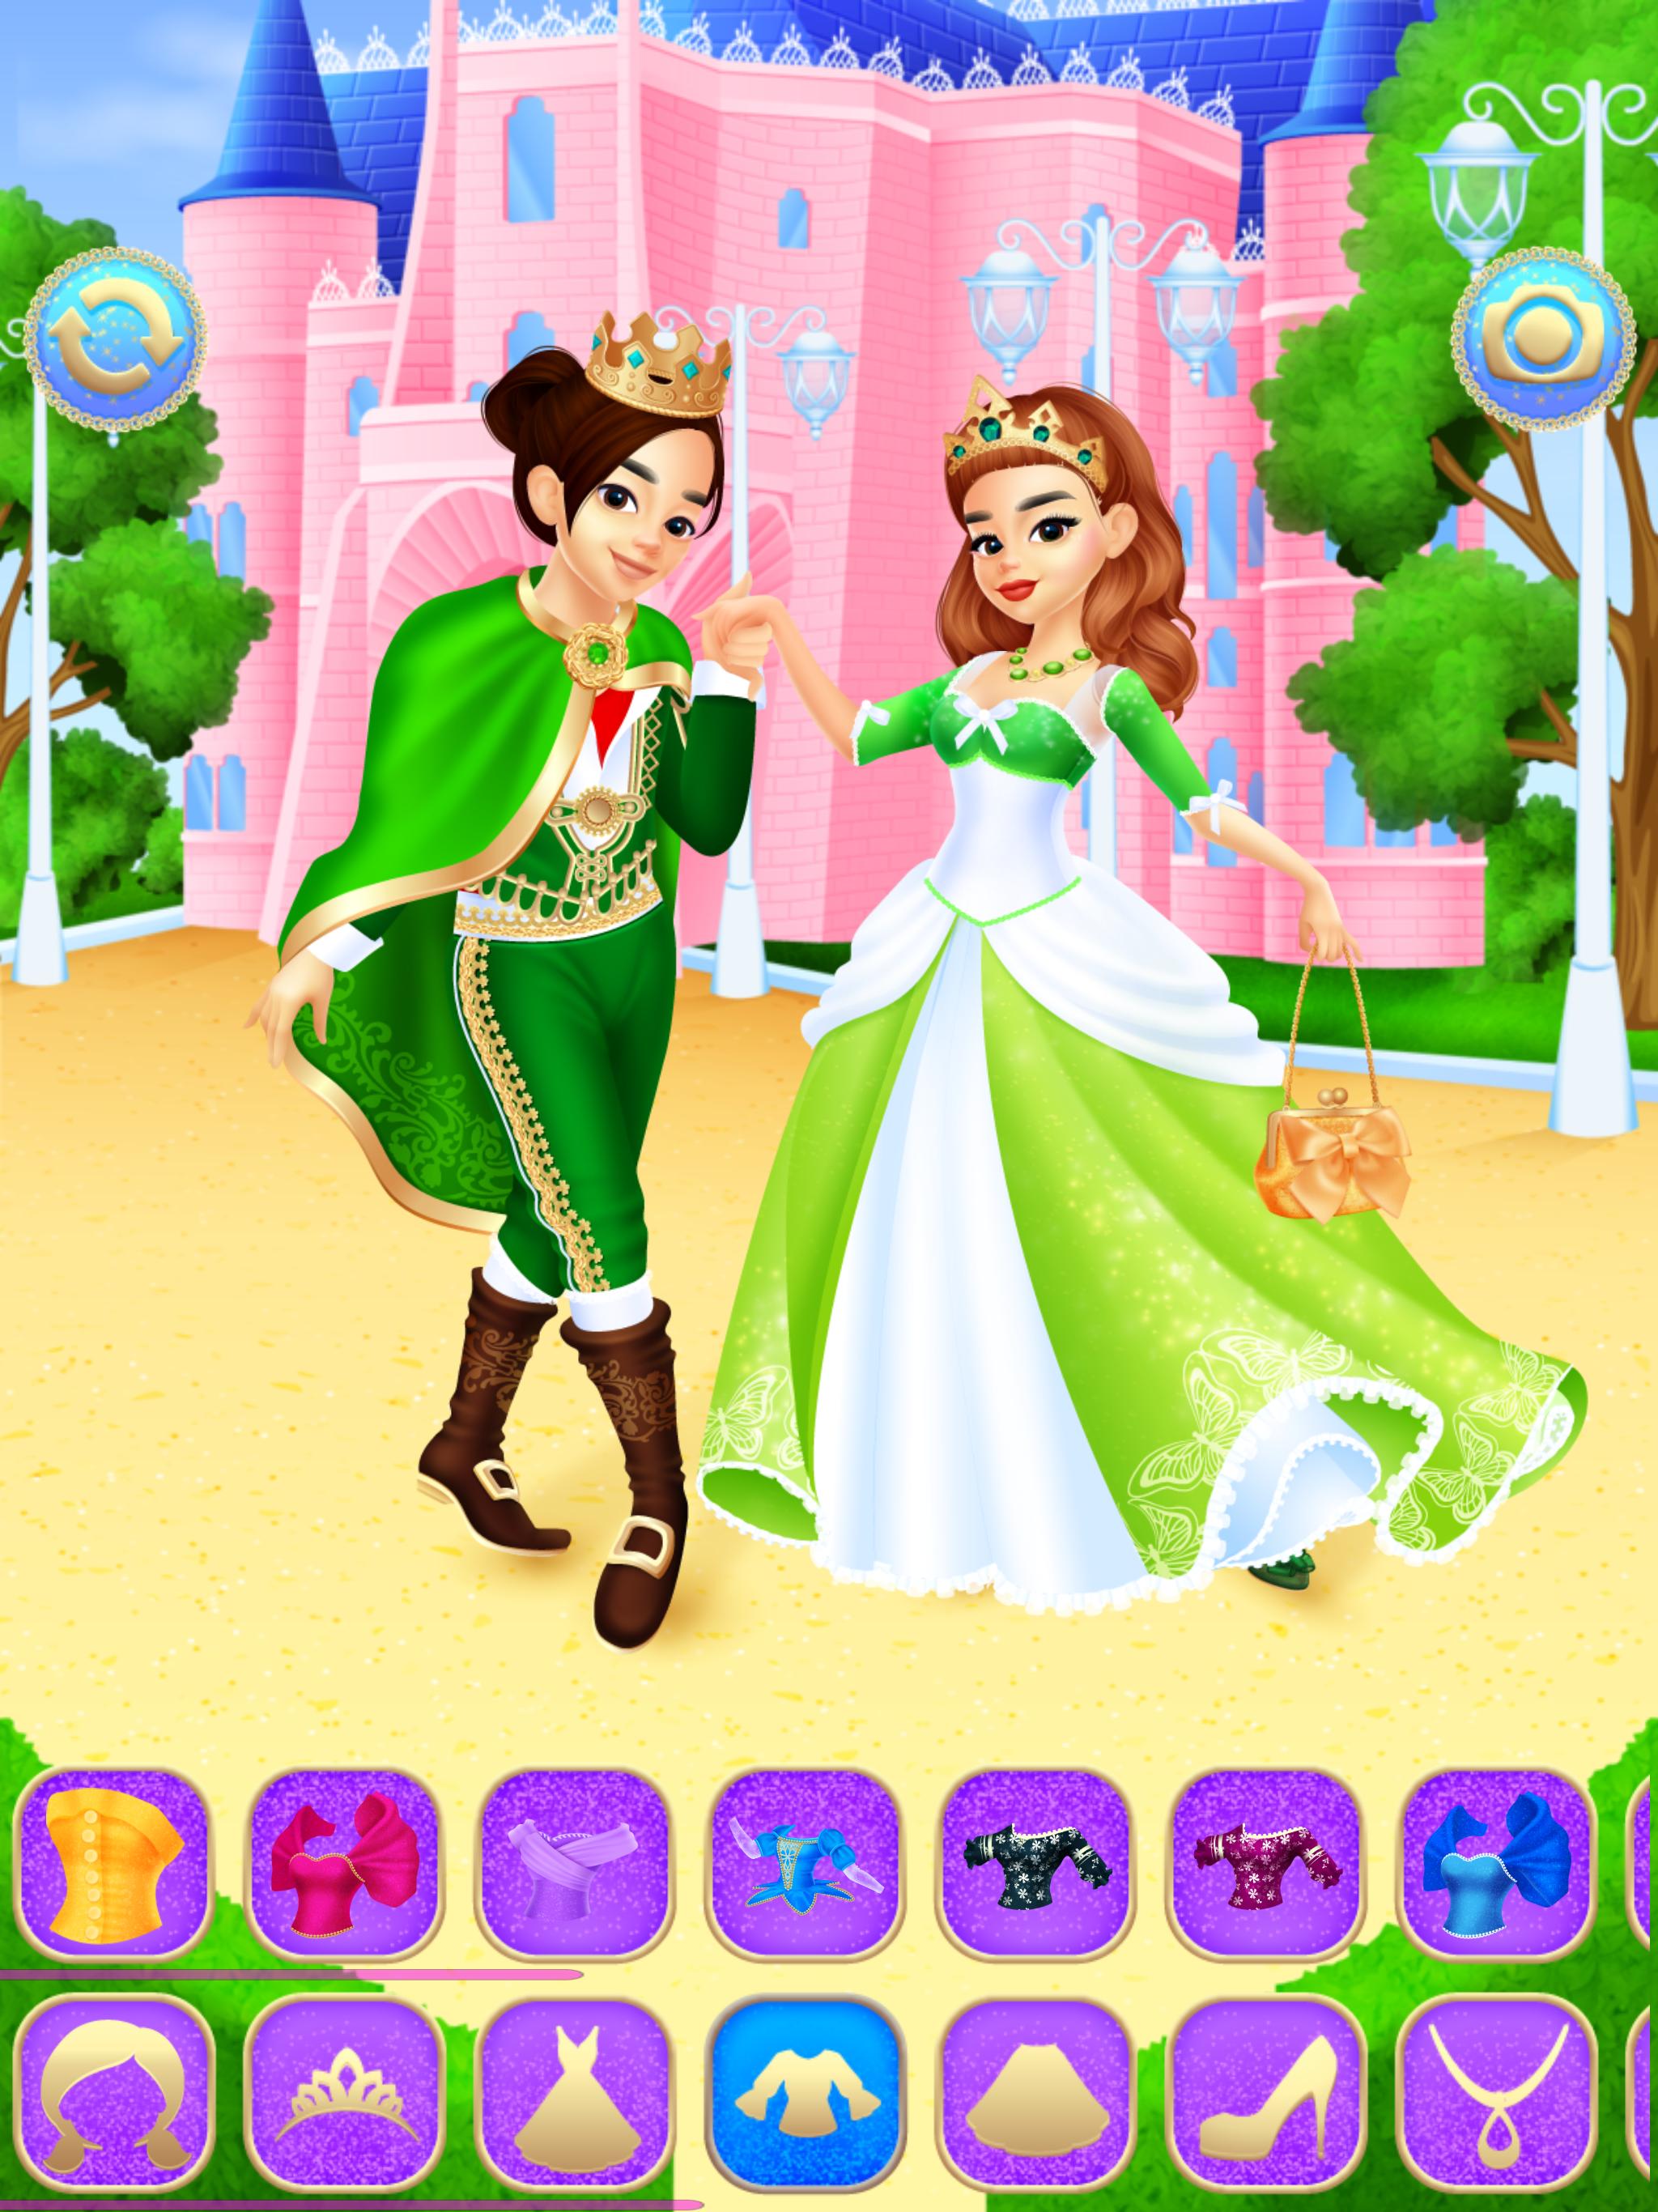 لعبة الأميرة سندريلا الجذابة for Android - APK Download